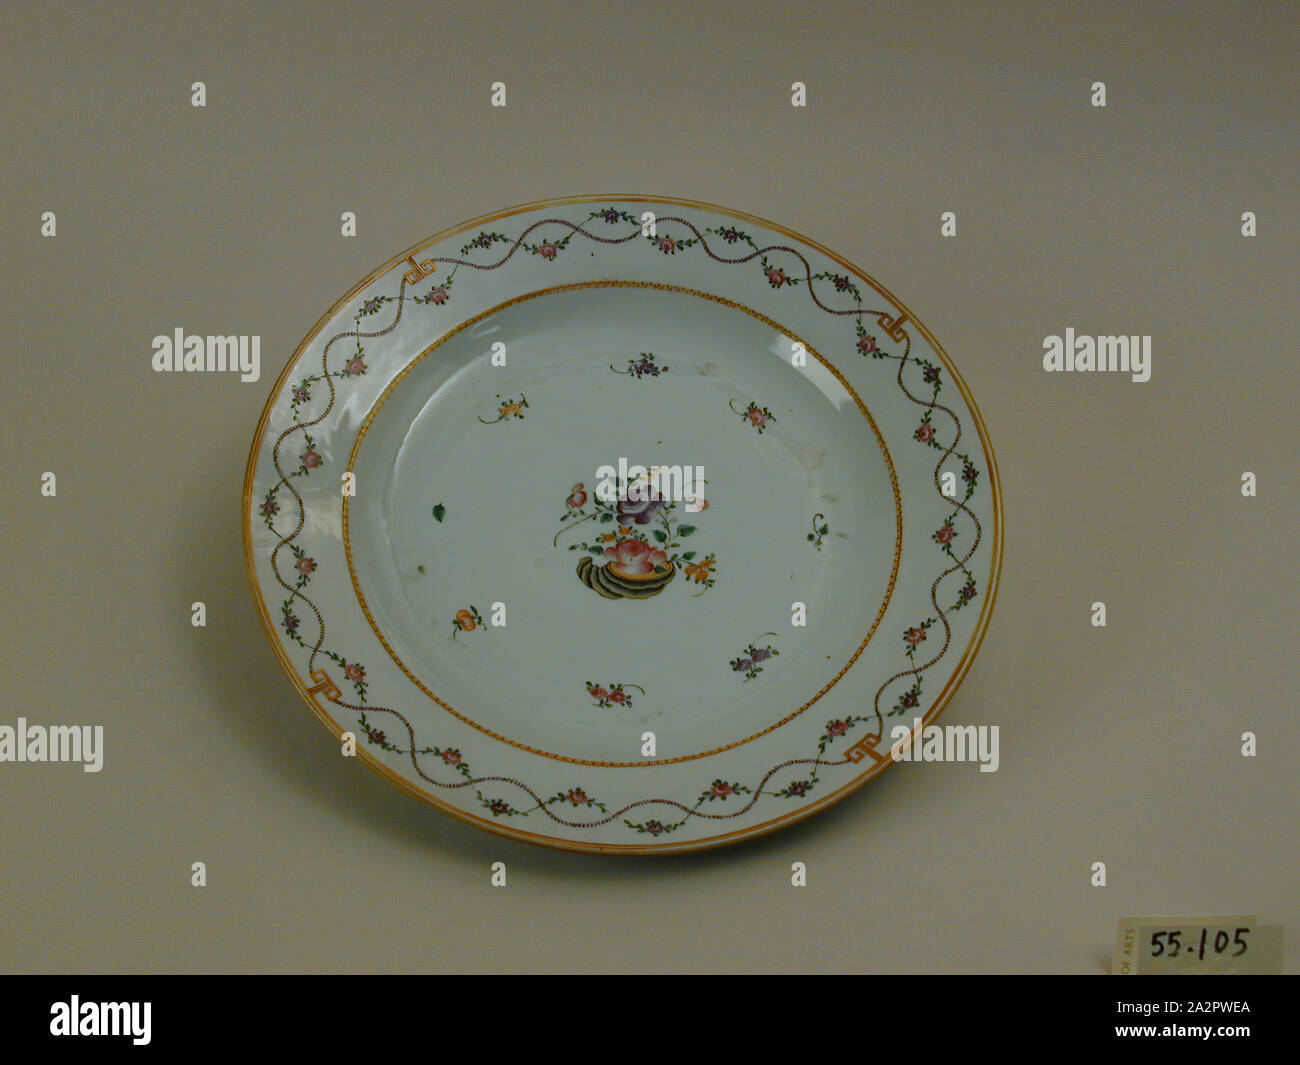 Inconnu (Chinois), couper la plaque, 1750/1800, carreaux de porcelaine à pâte dure avec émail polychrome et dorure, Hauteur x diamètre : 1 5/8 x 12 1/16 in. (4,1 x 30,6 cm Banque D'Images